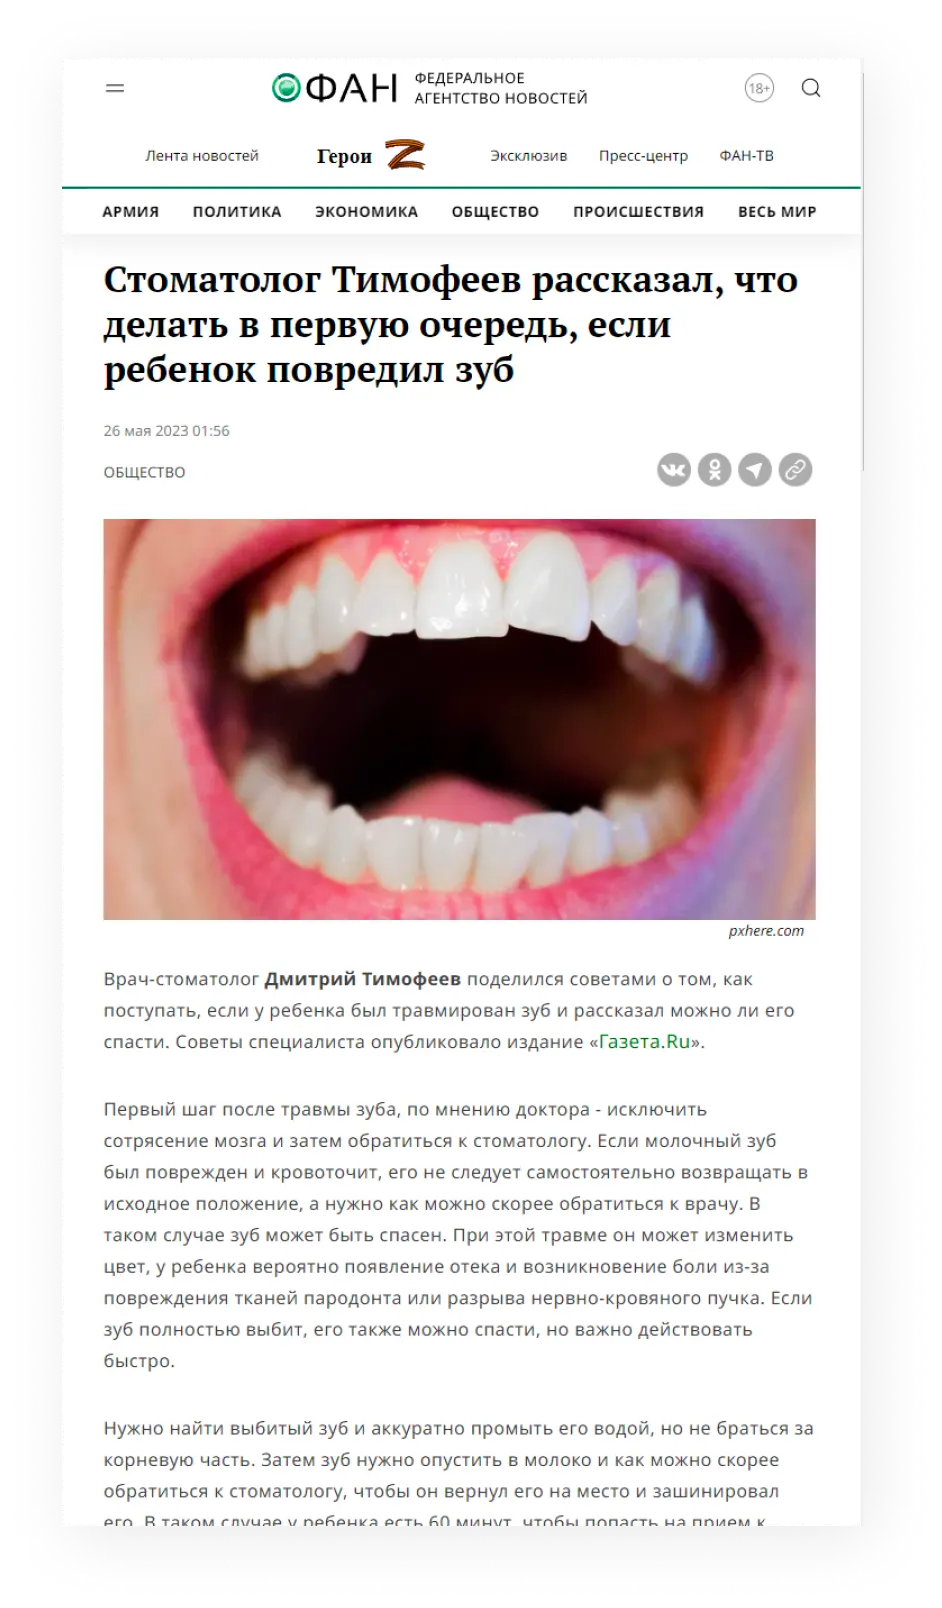 Стоматолог Тимофеев рассказал, что делать в первую очередь, если ребенок повредил зуб